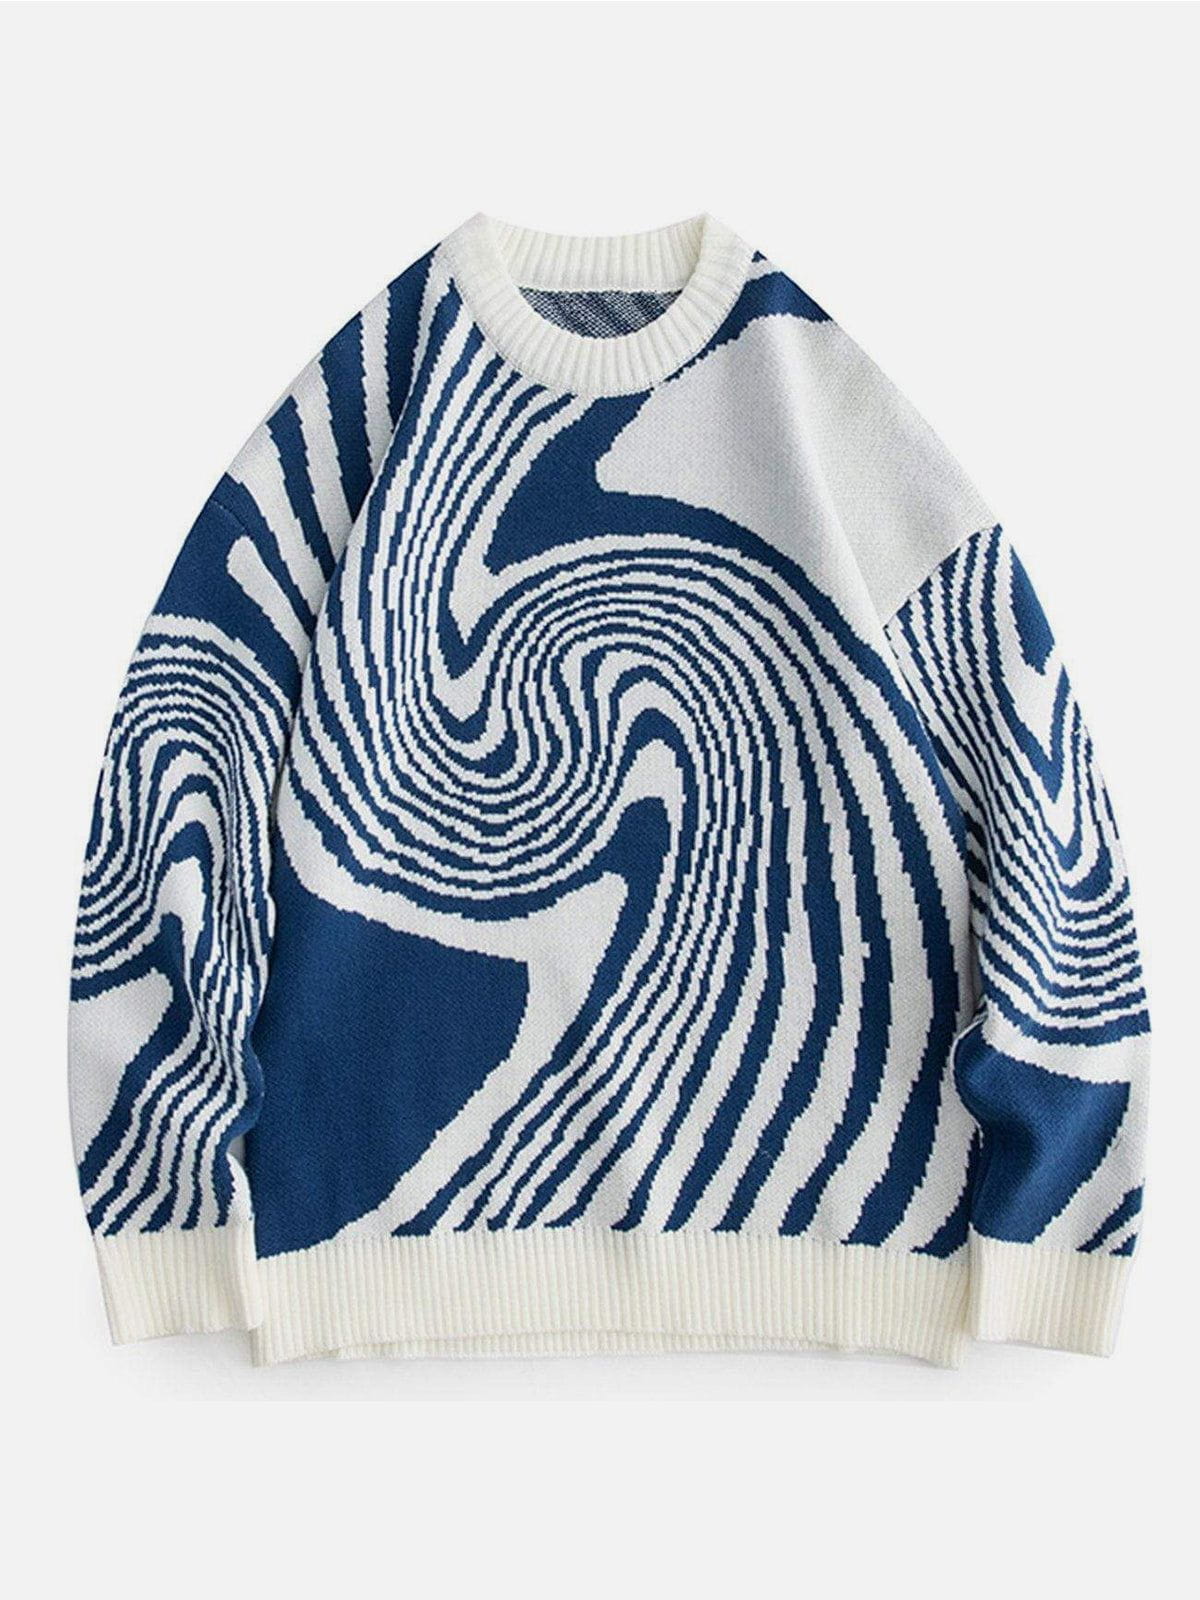 Whirlpool Knit Sweater Streetwear Brand Techwear Combat Tactical YUGEN THEORY